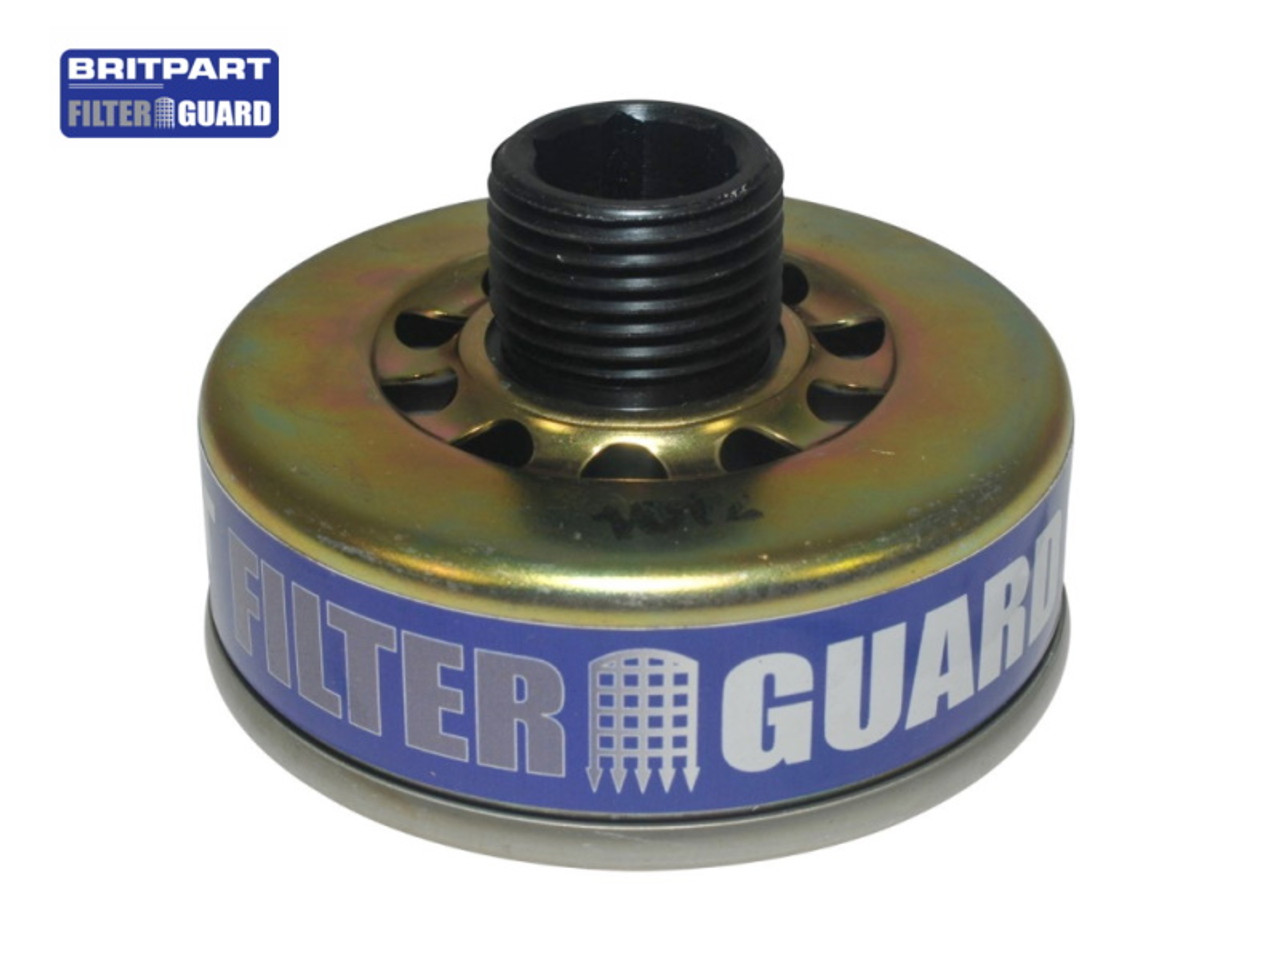 Britpart Filter Guard For LR031439